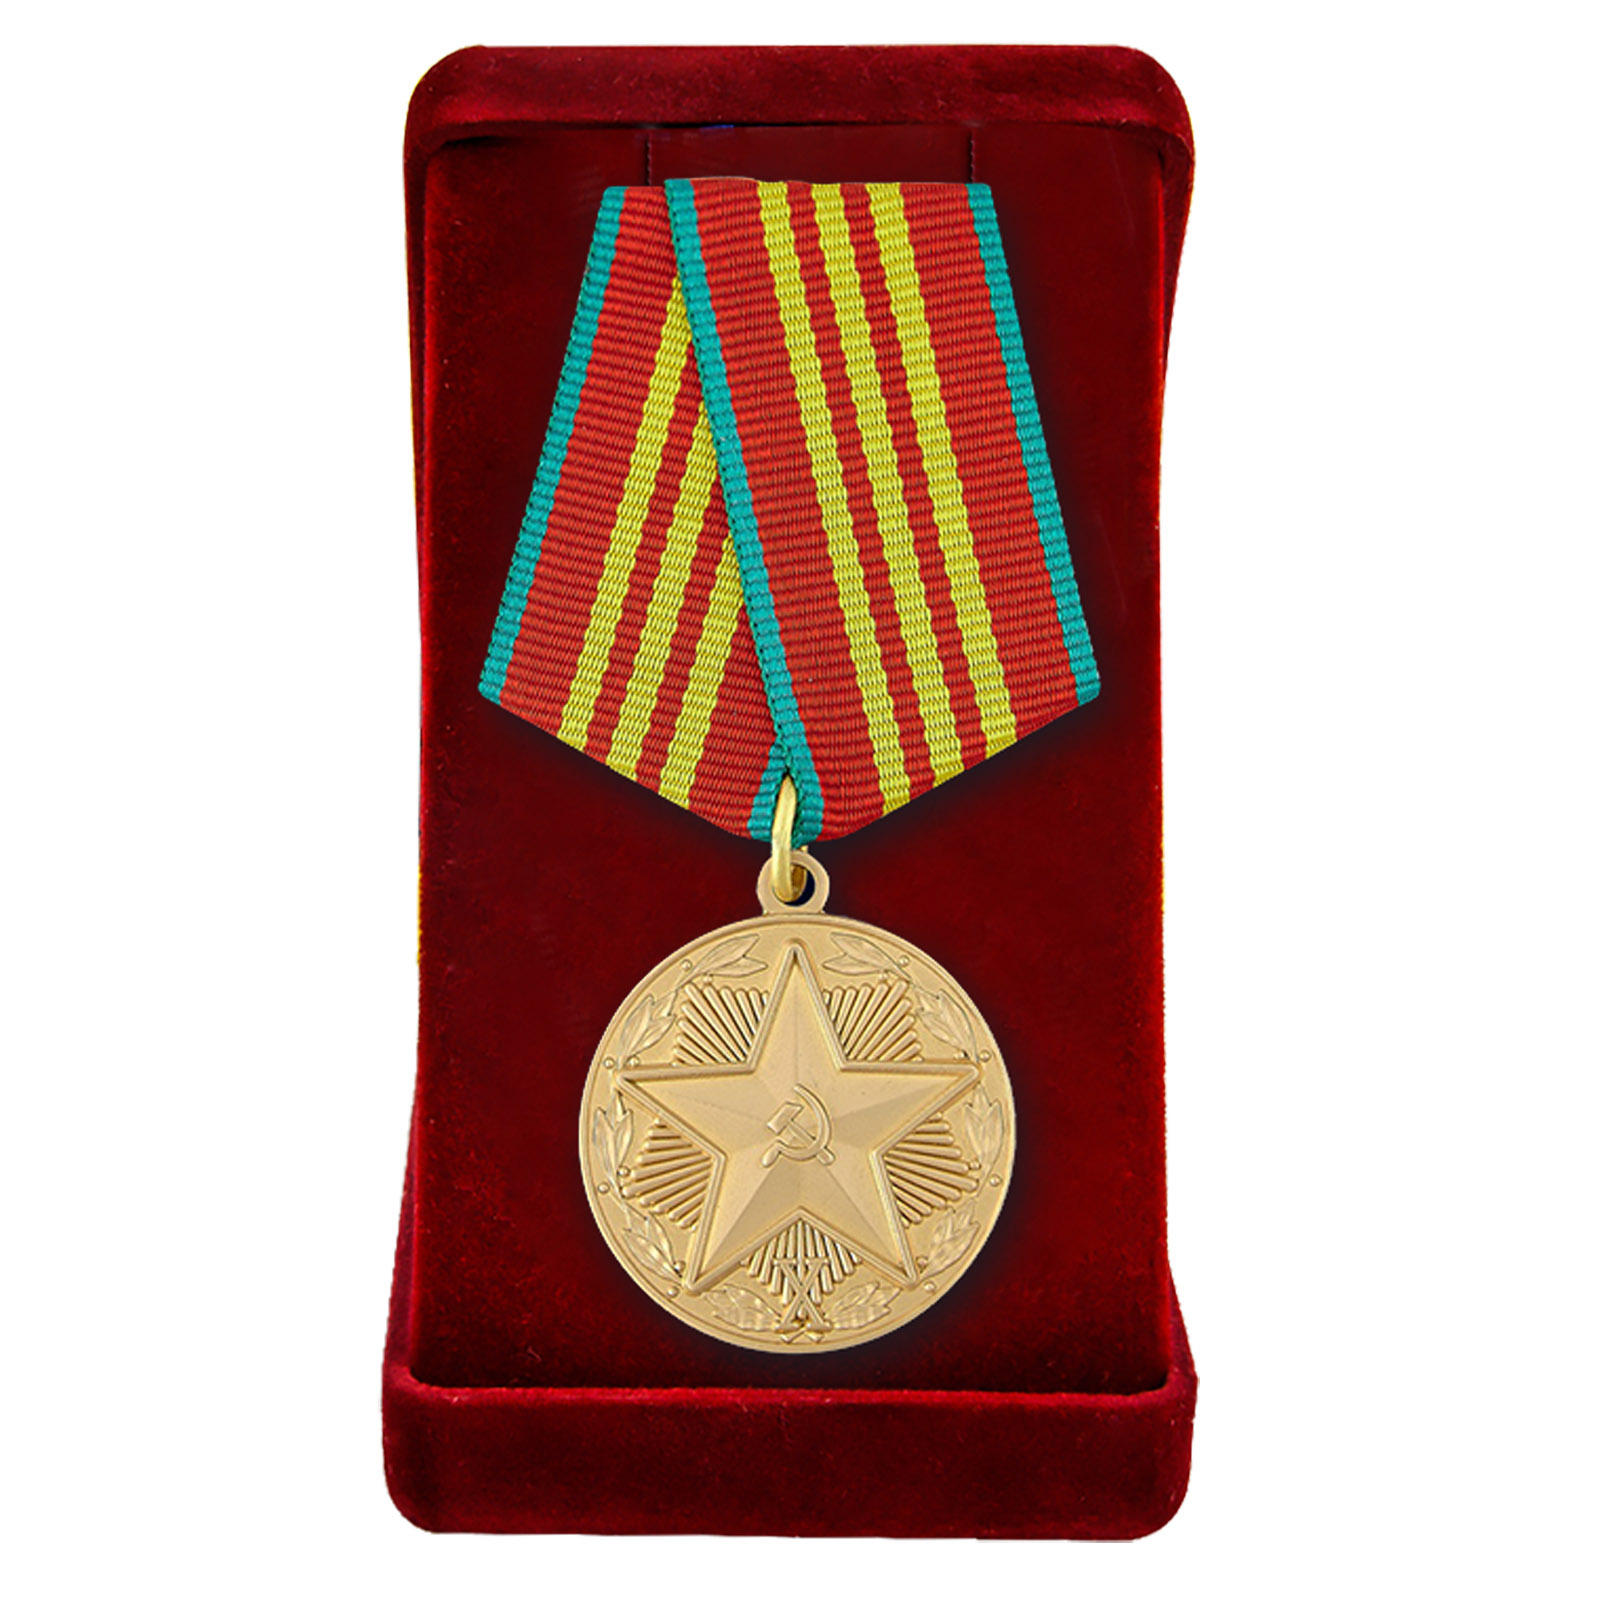 Муляж медали КГБ "За безупречную службу" третьей степени